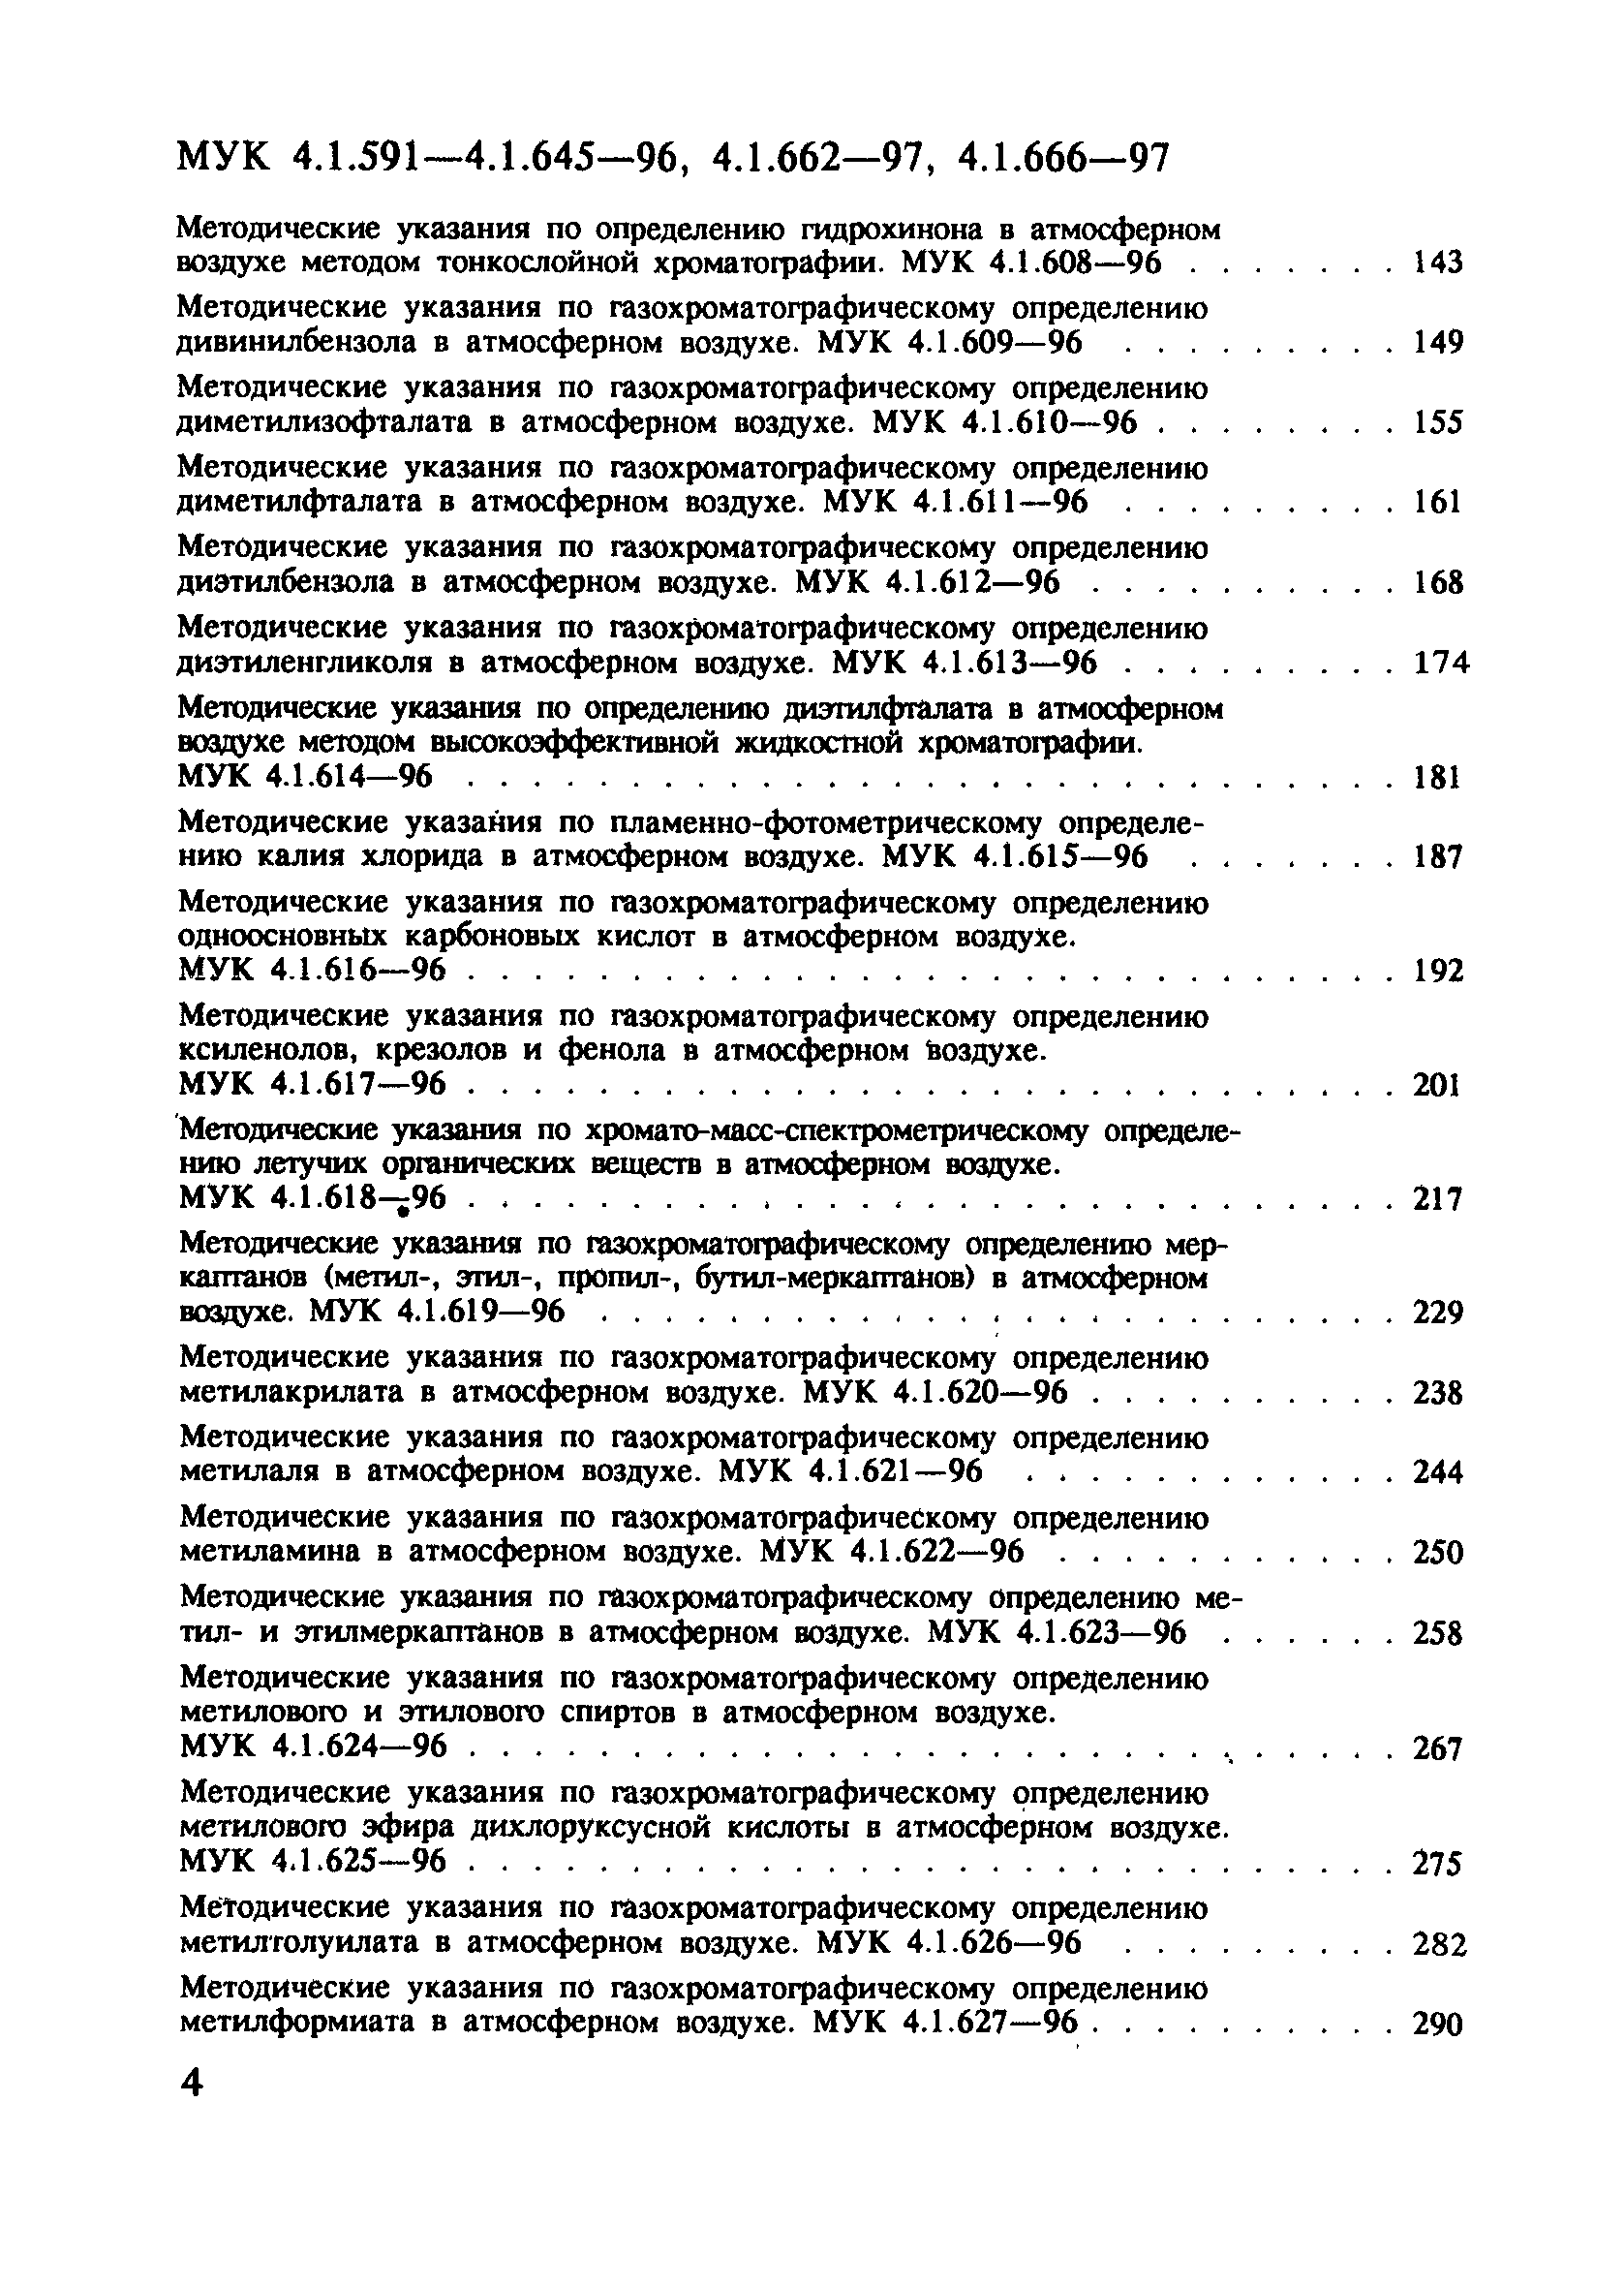 МУК 4.1.614-96